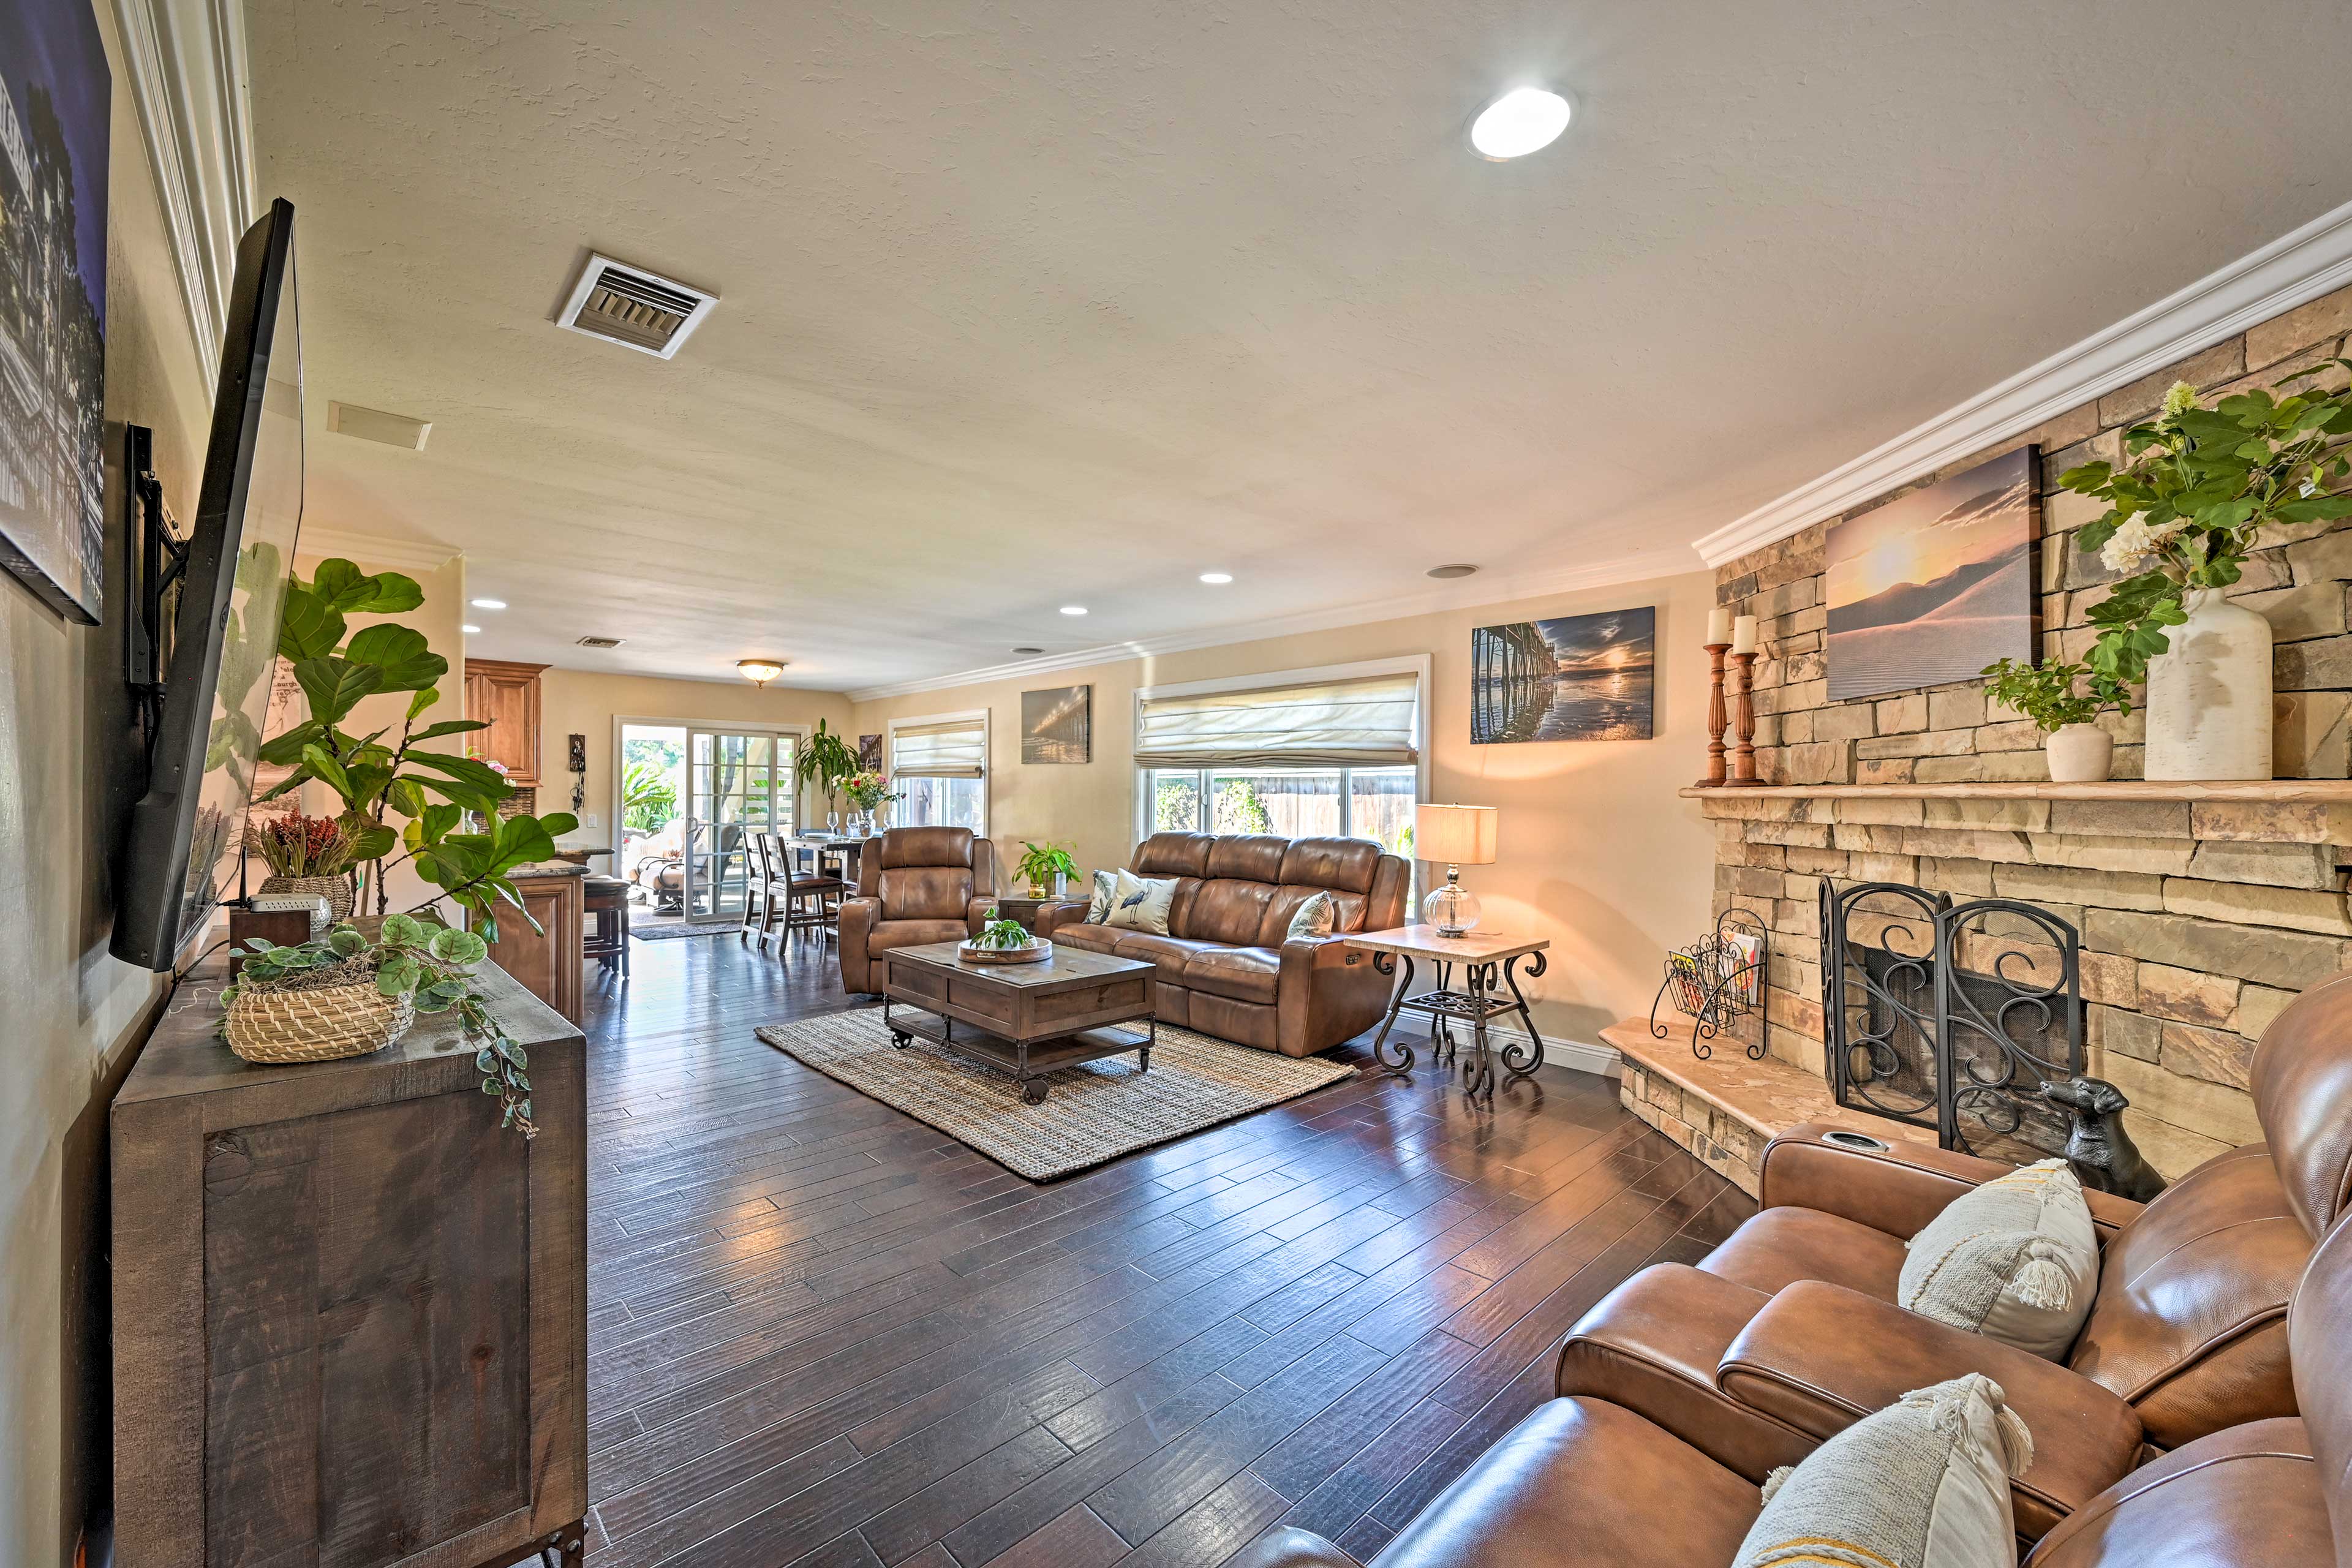 Living Room | Smart TV | Queen Air Mattress | Fireplace (Decorative Only)